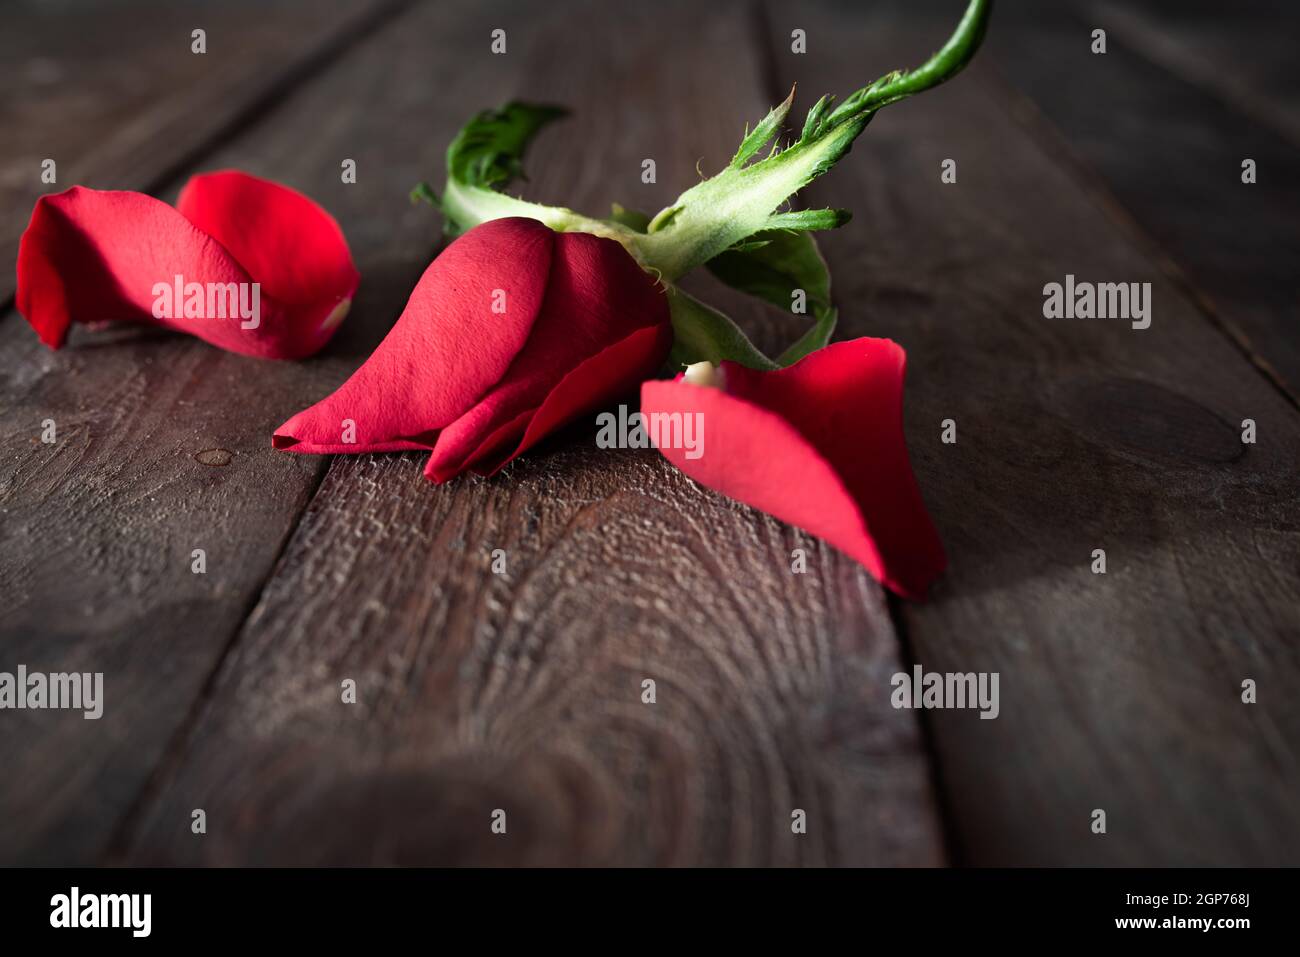 Fiore di rosa rossa appassita su legno scuro. Background emotivo per la transizione e l'addio. Spazio per il testo. Foto Stock